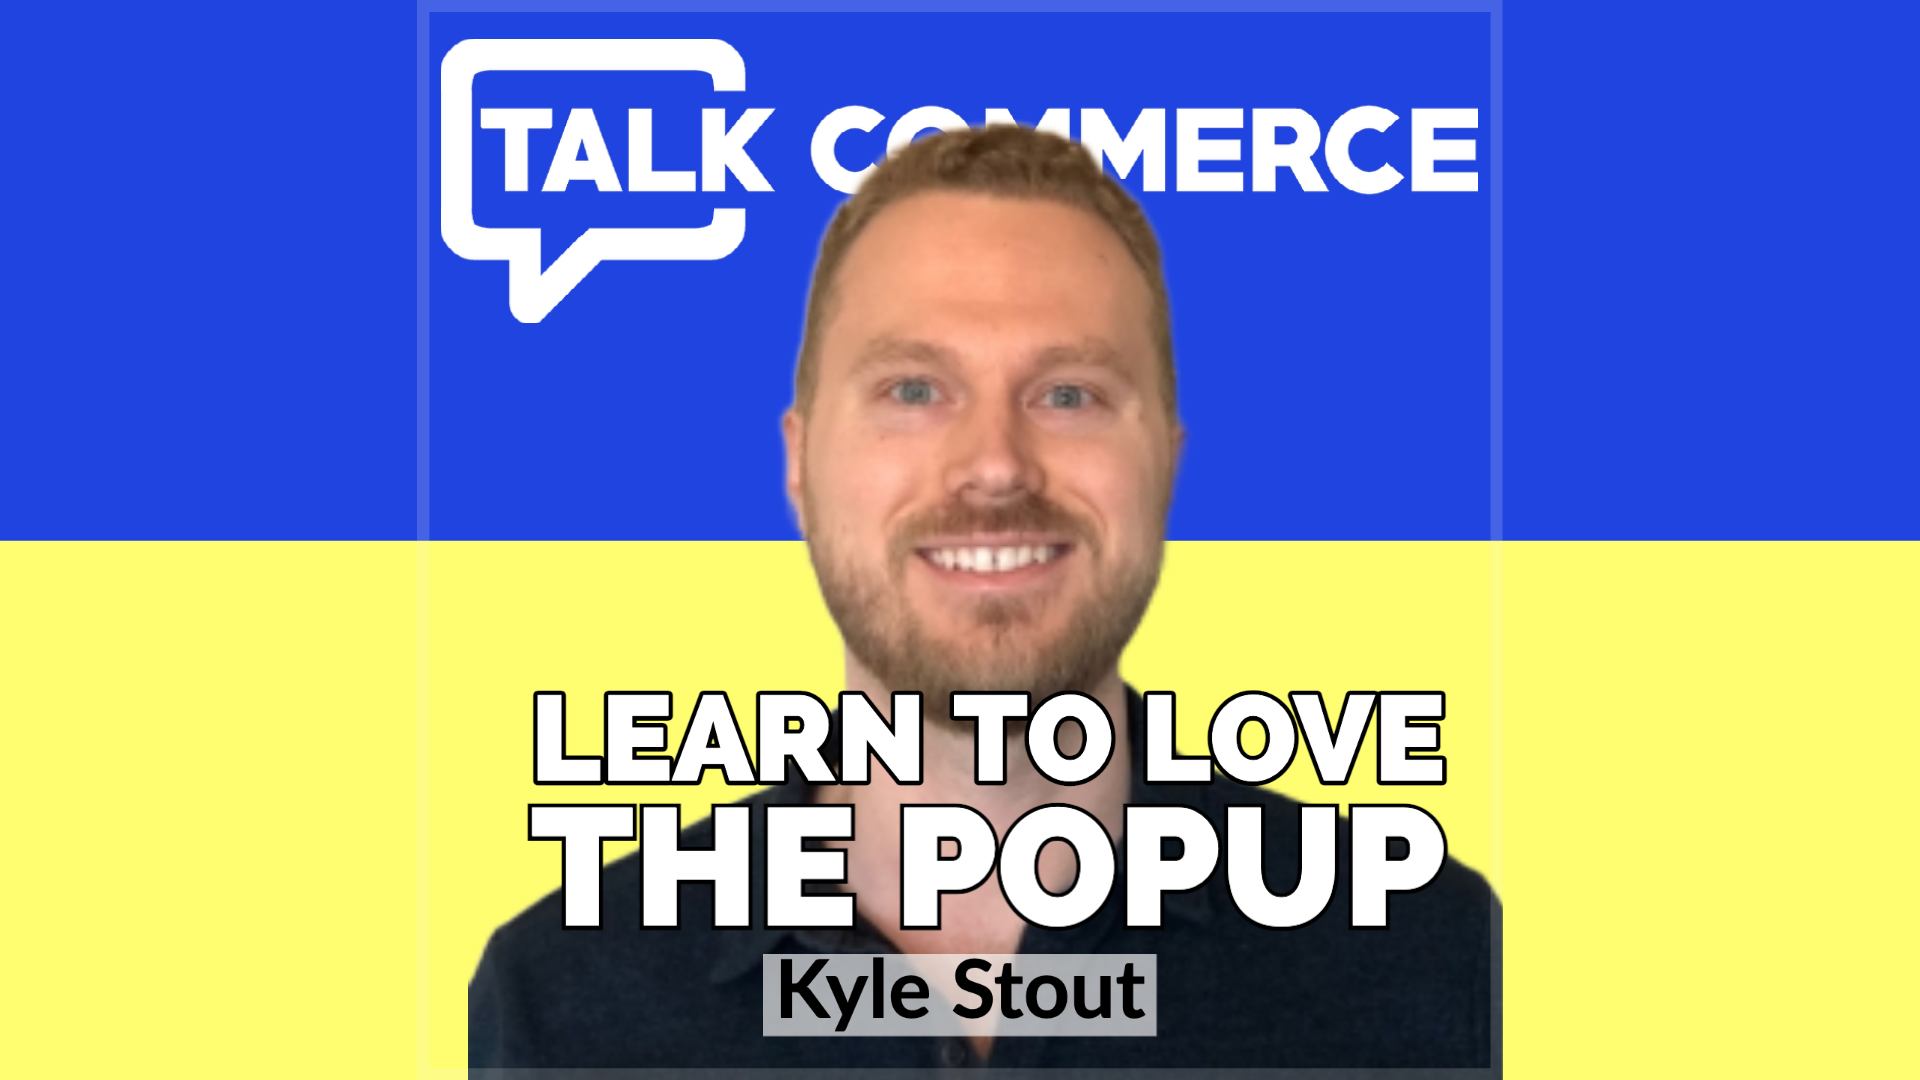 Talk-Commerce Kyle Stout